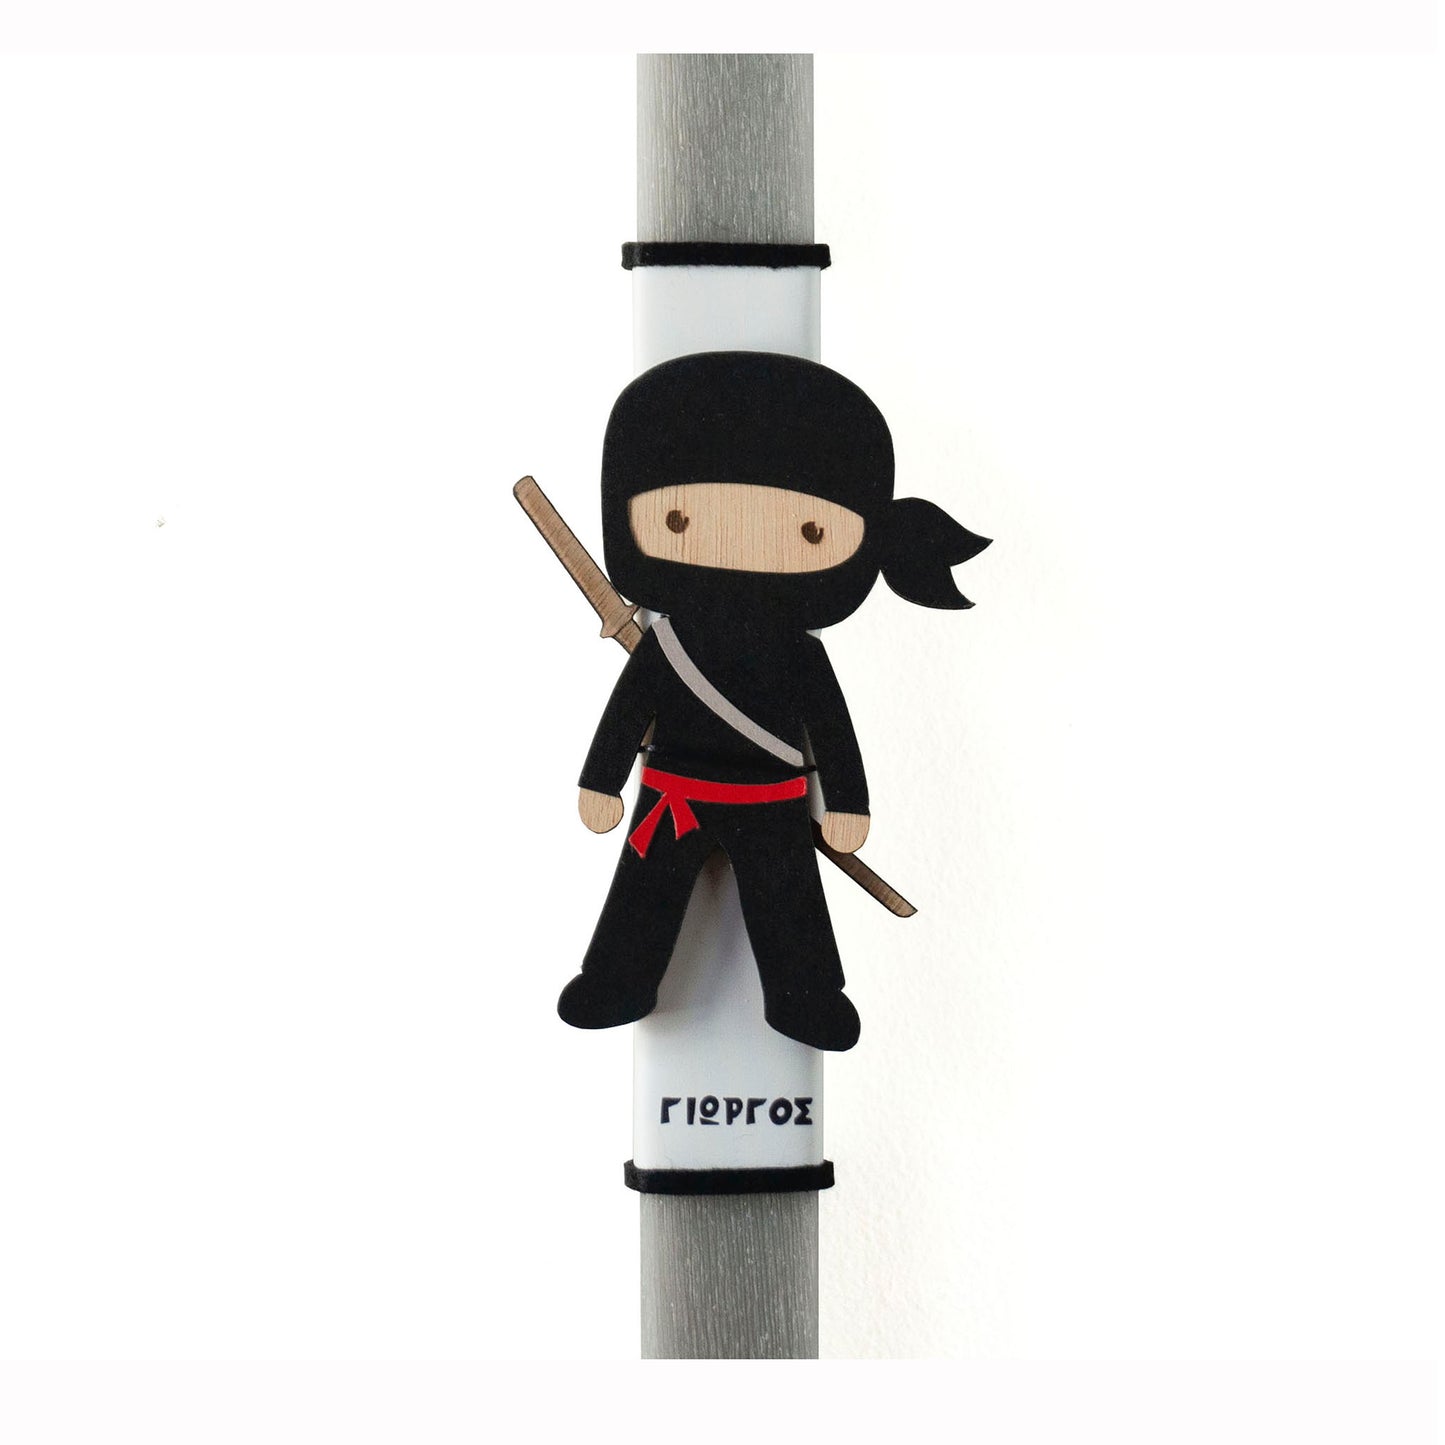 Λαμπάδα ninja με όνομα